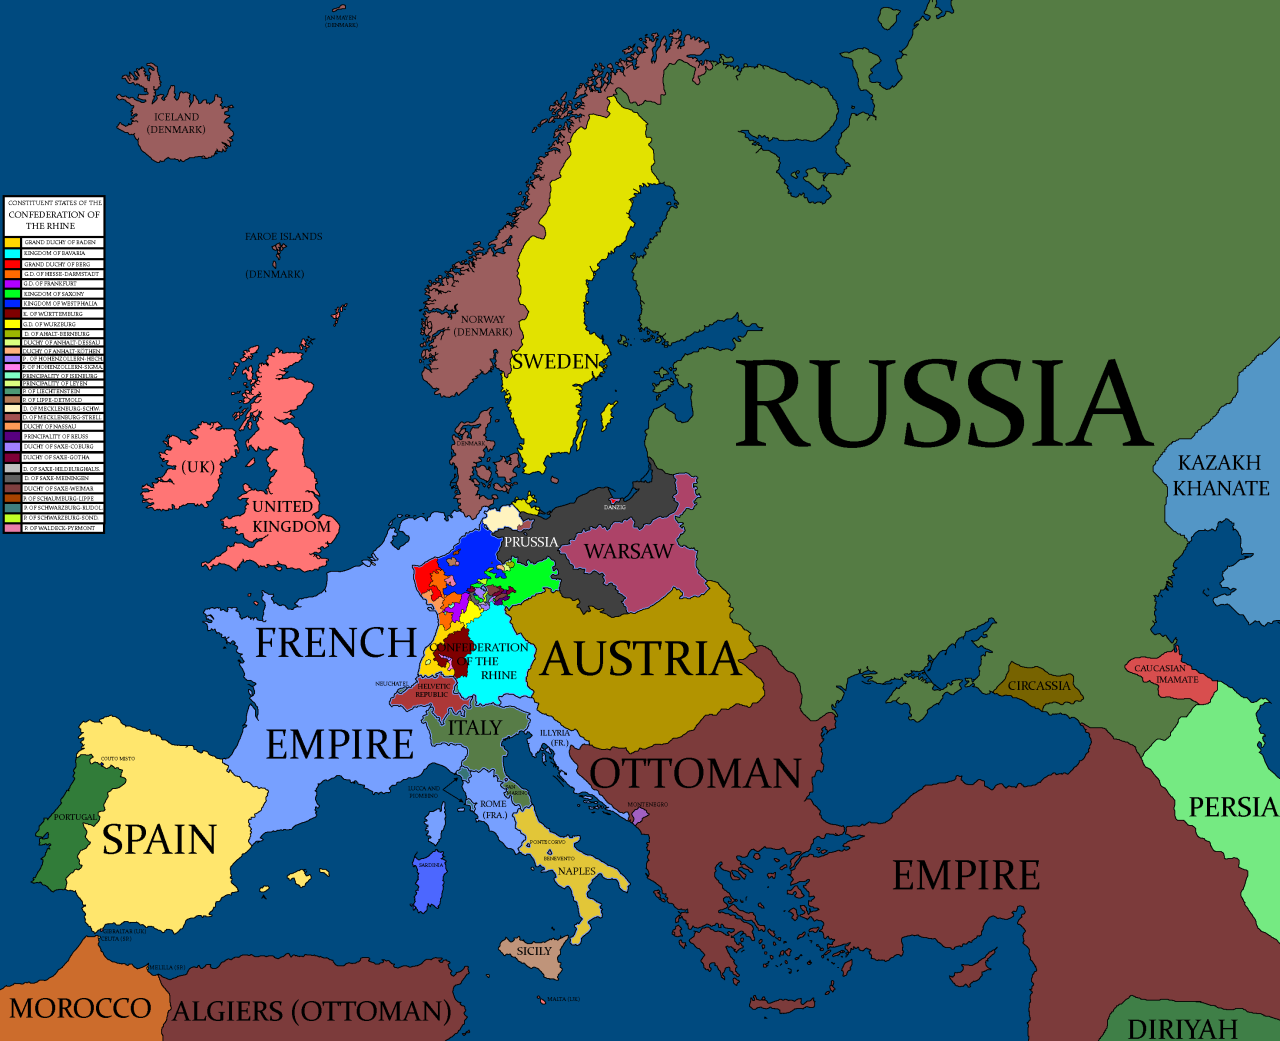 Карта европы 1812 года на русском языке